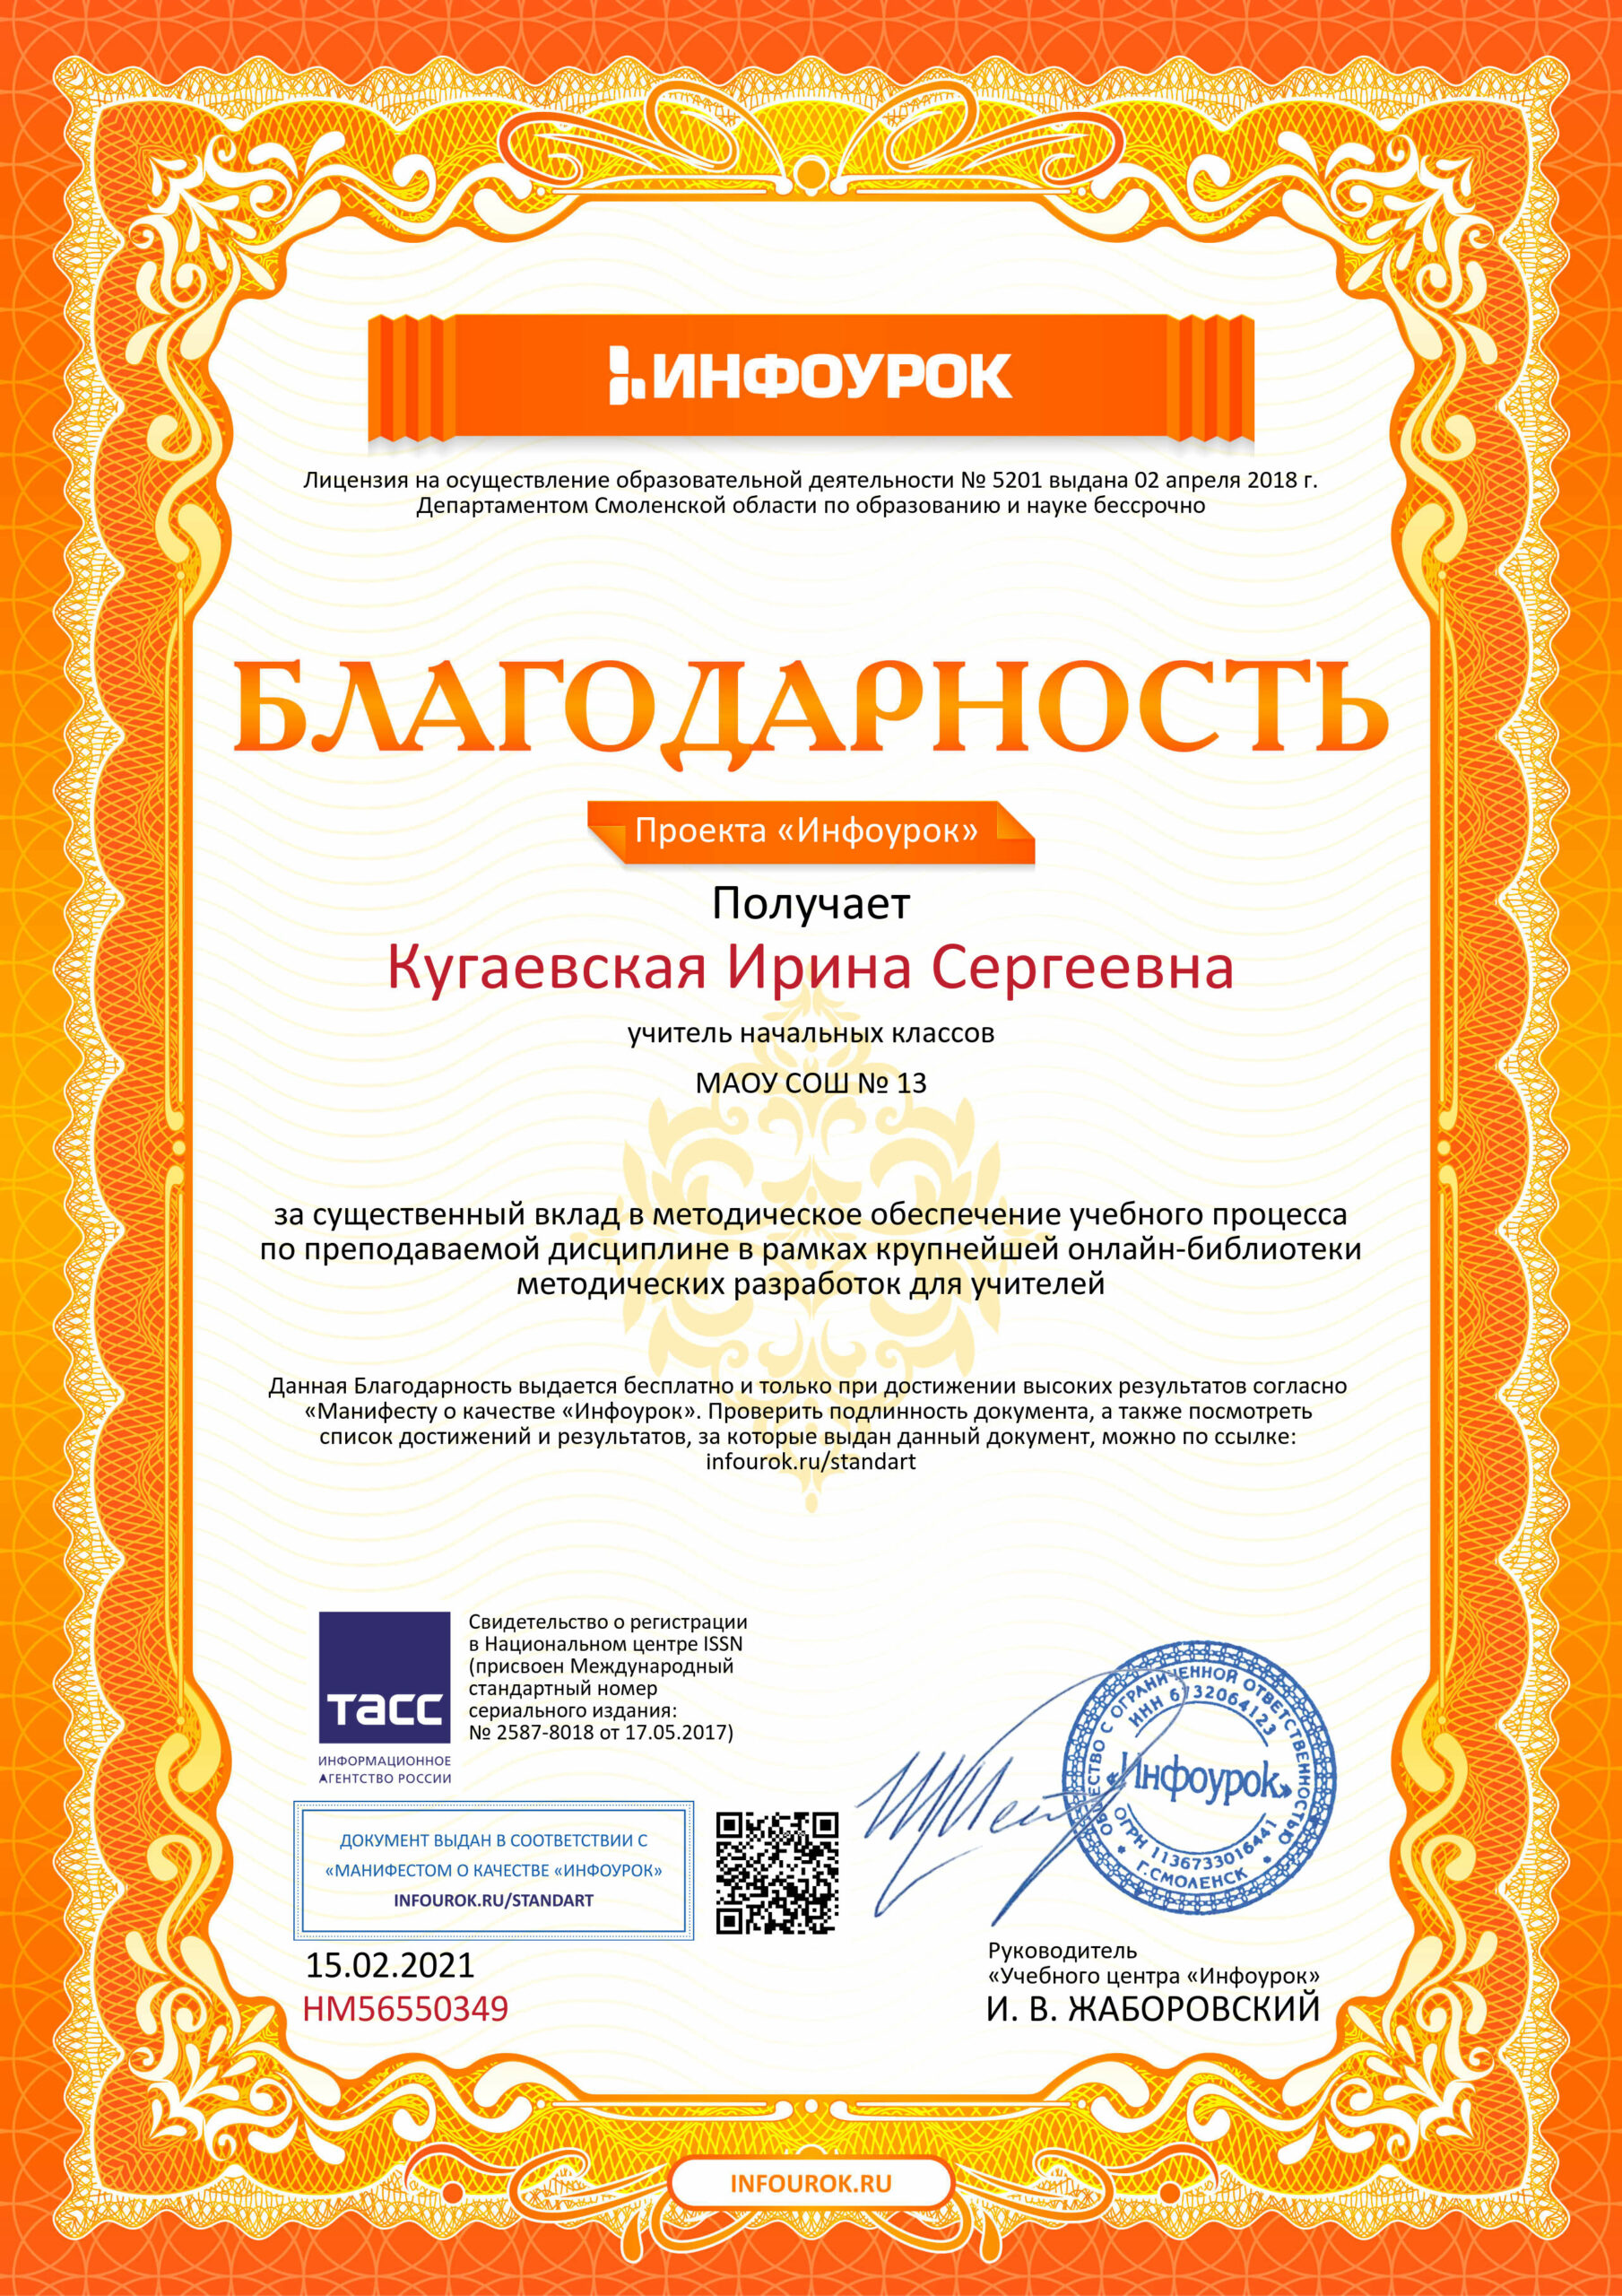 Благодарность проекта infourok.ru №НМ56550349